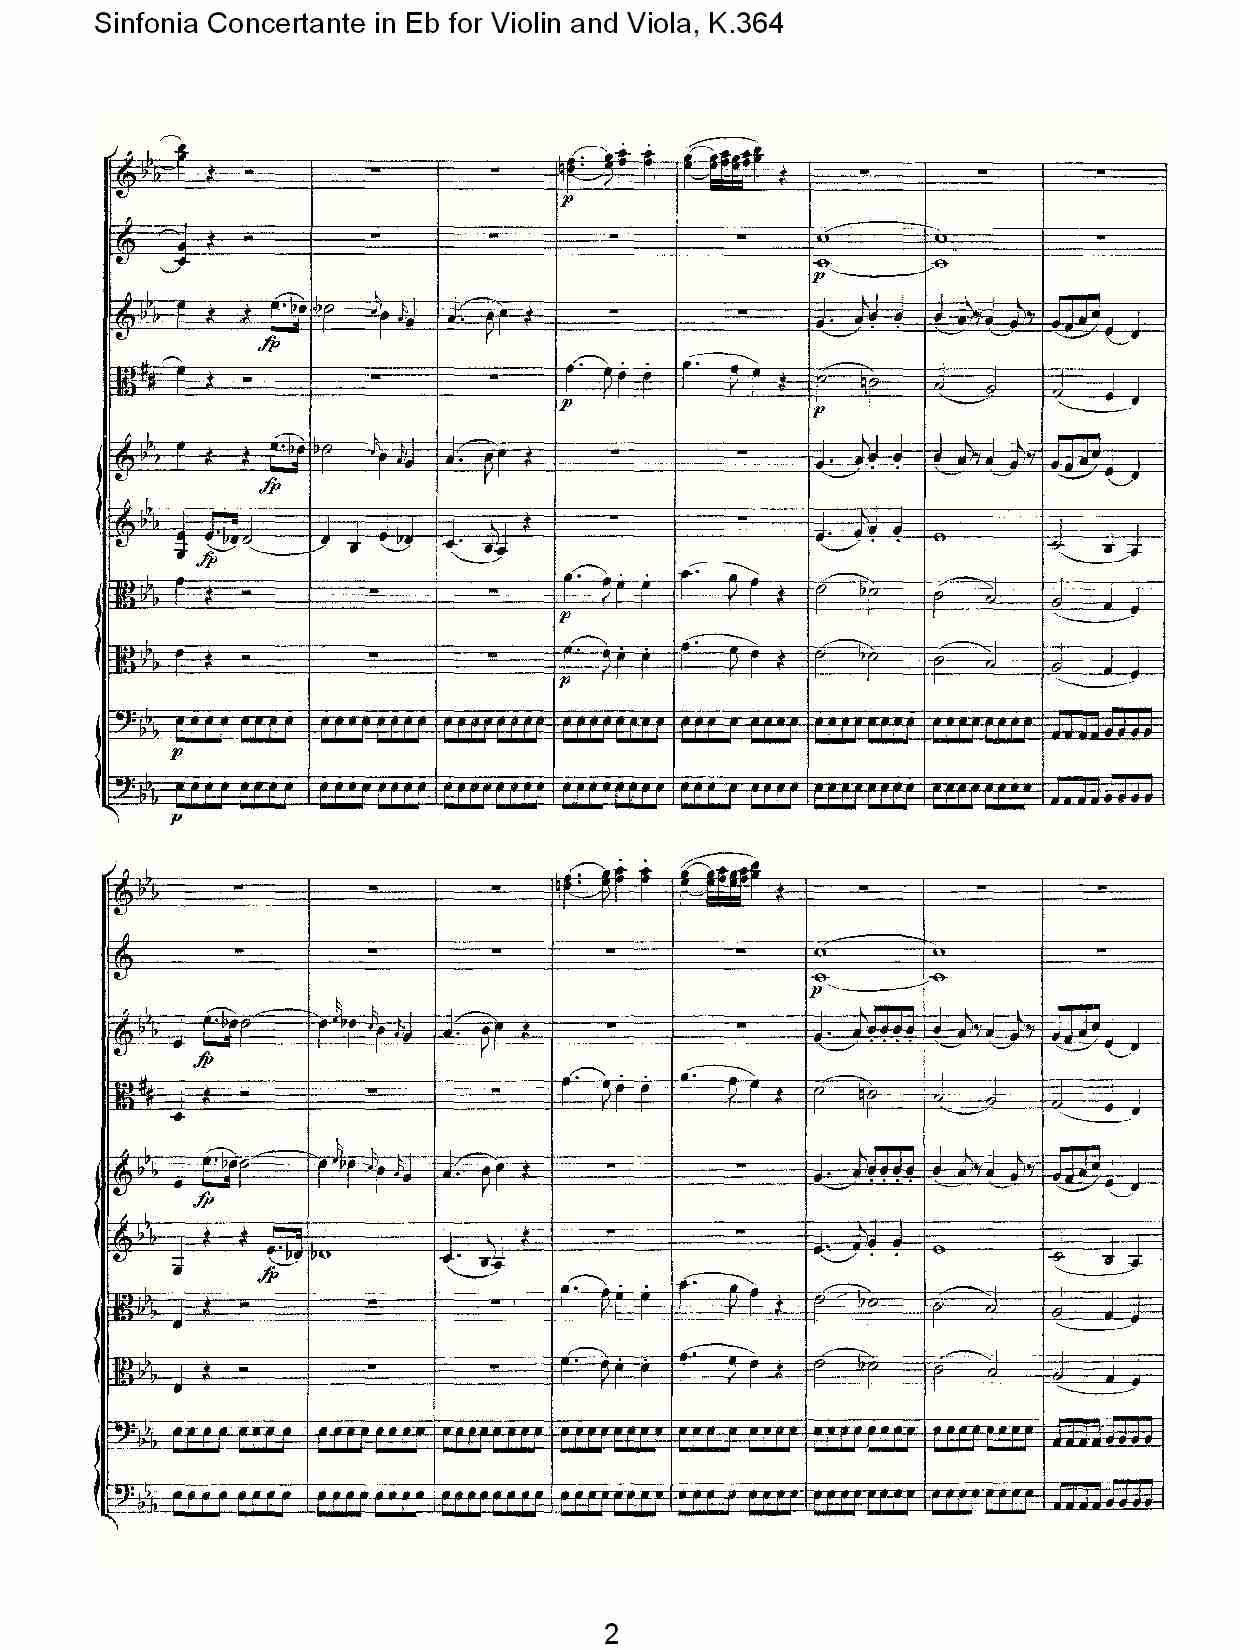 Eb调小提琴与中提琴炫技序曲, 2